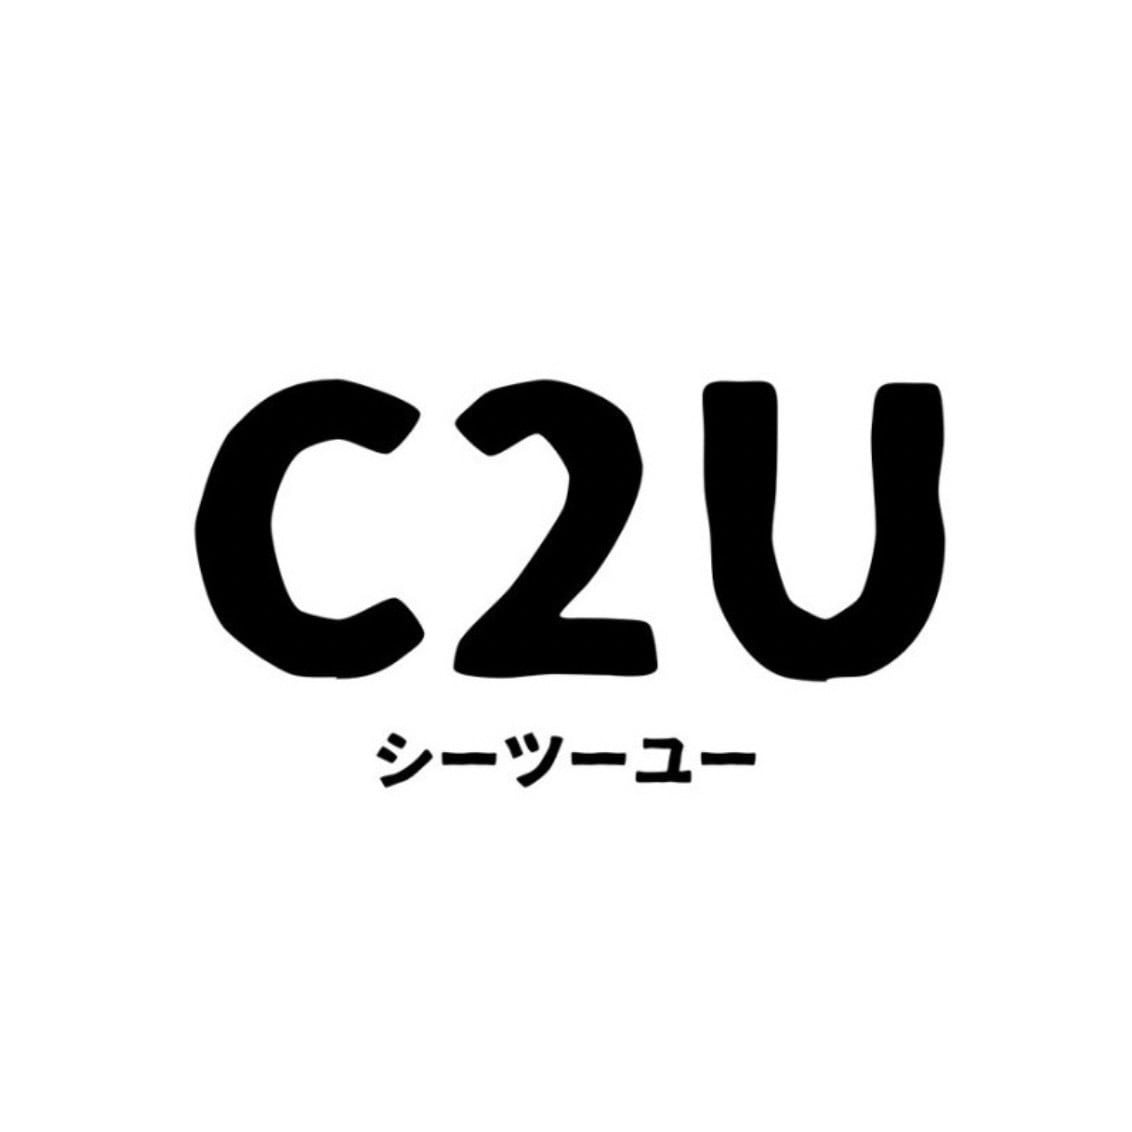 c2u